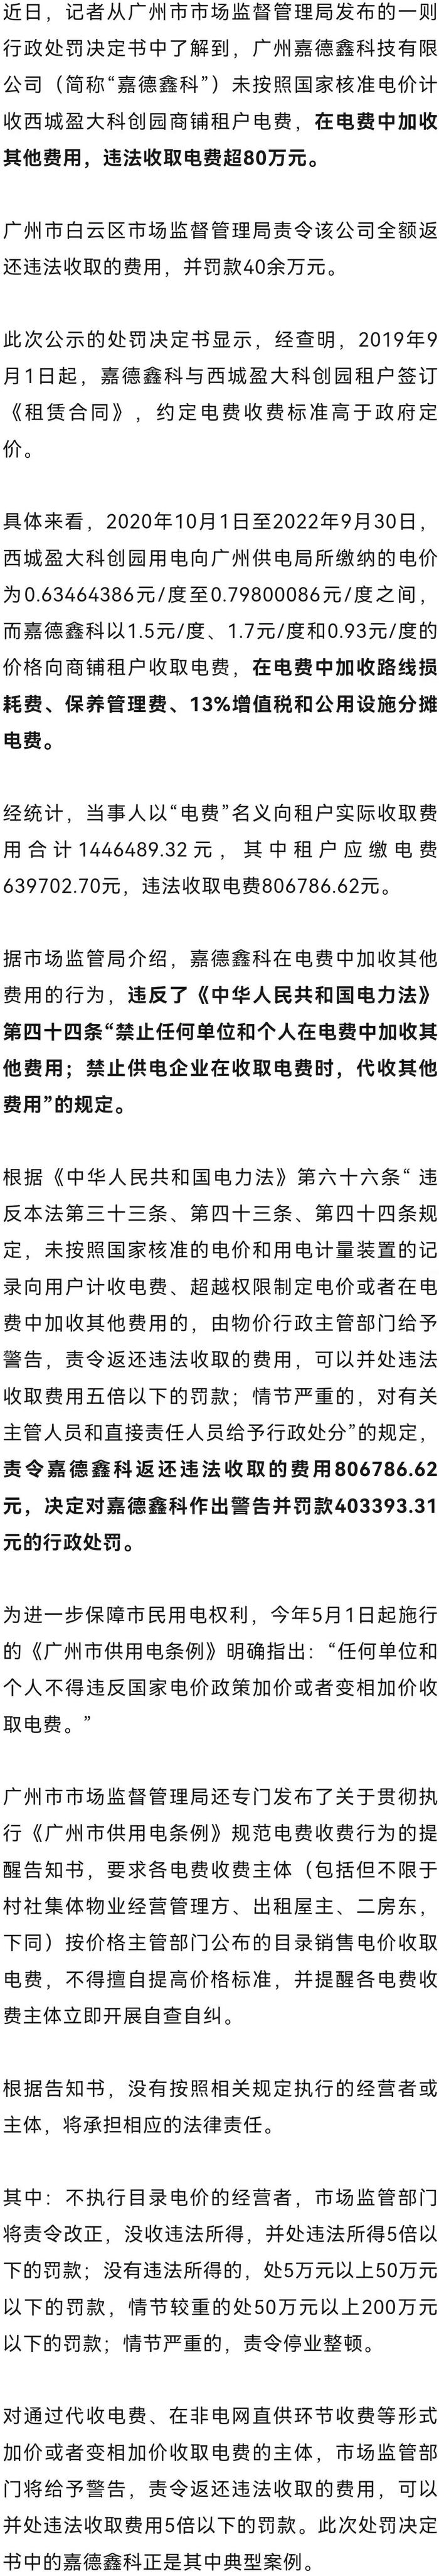 广州一工业园向租户收取高额电费，被罚40多万元！